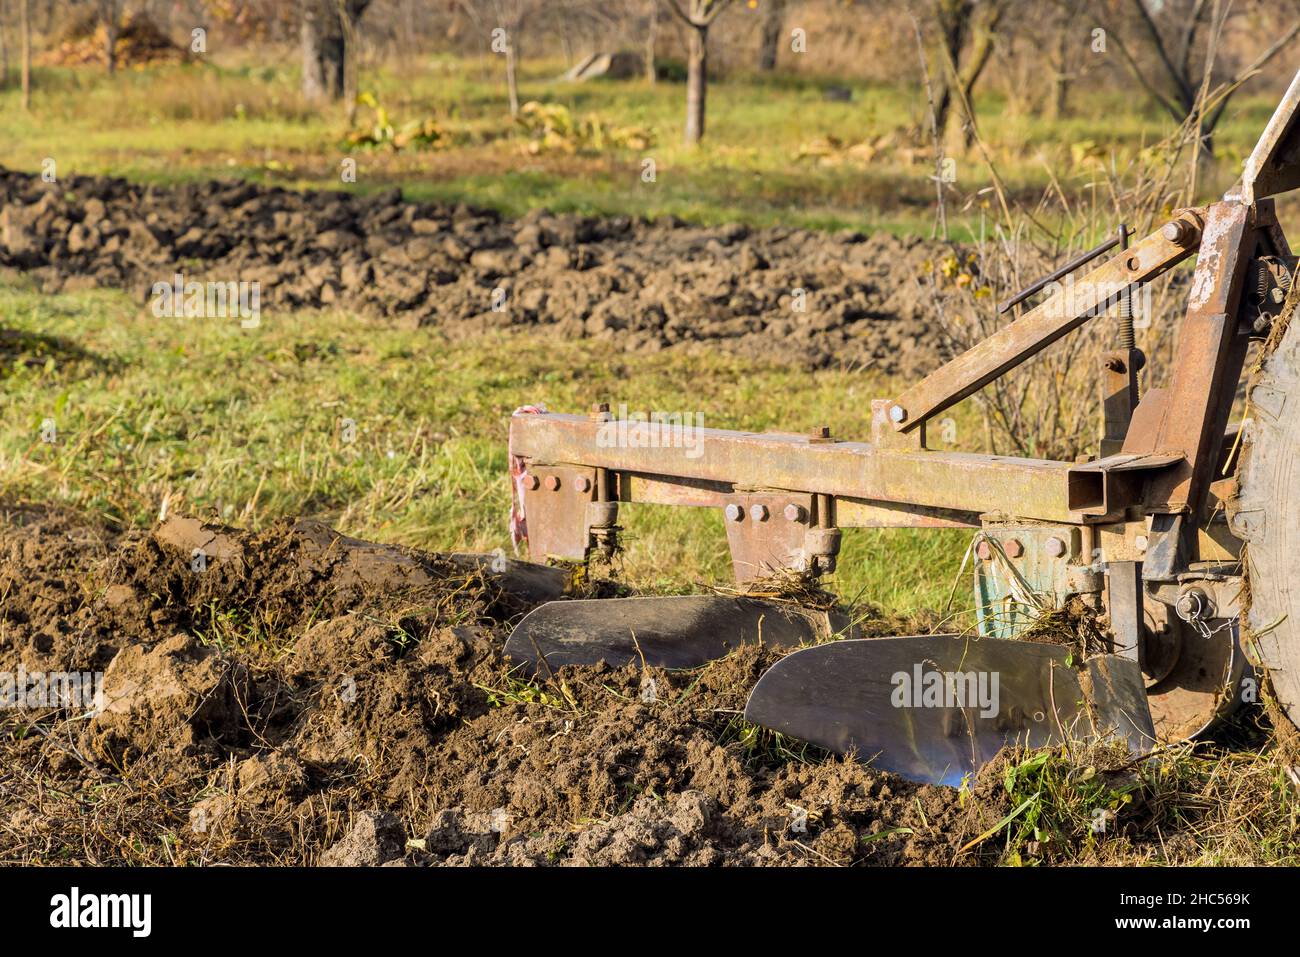 Land cultivation seasonal worker farm tractor plowing field Stock Photo